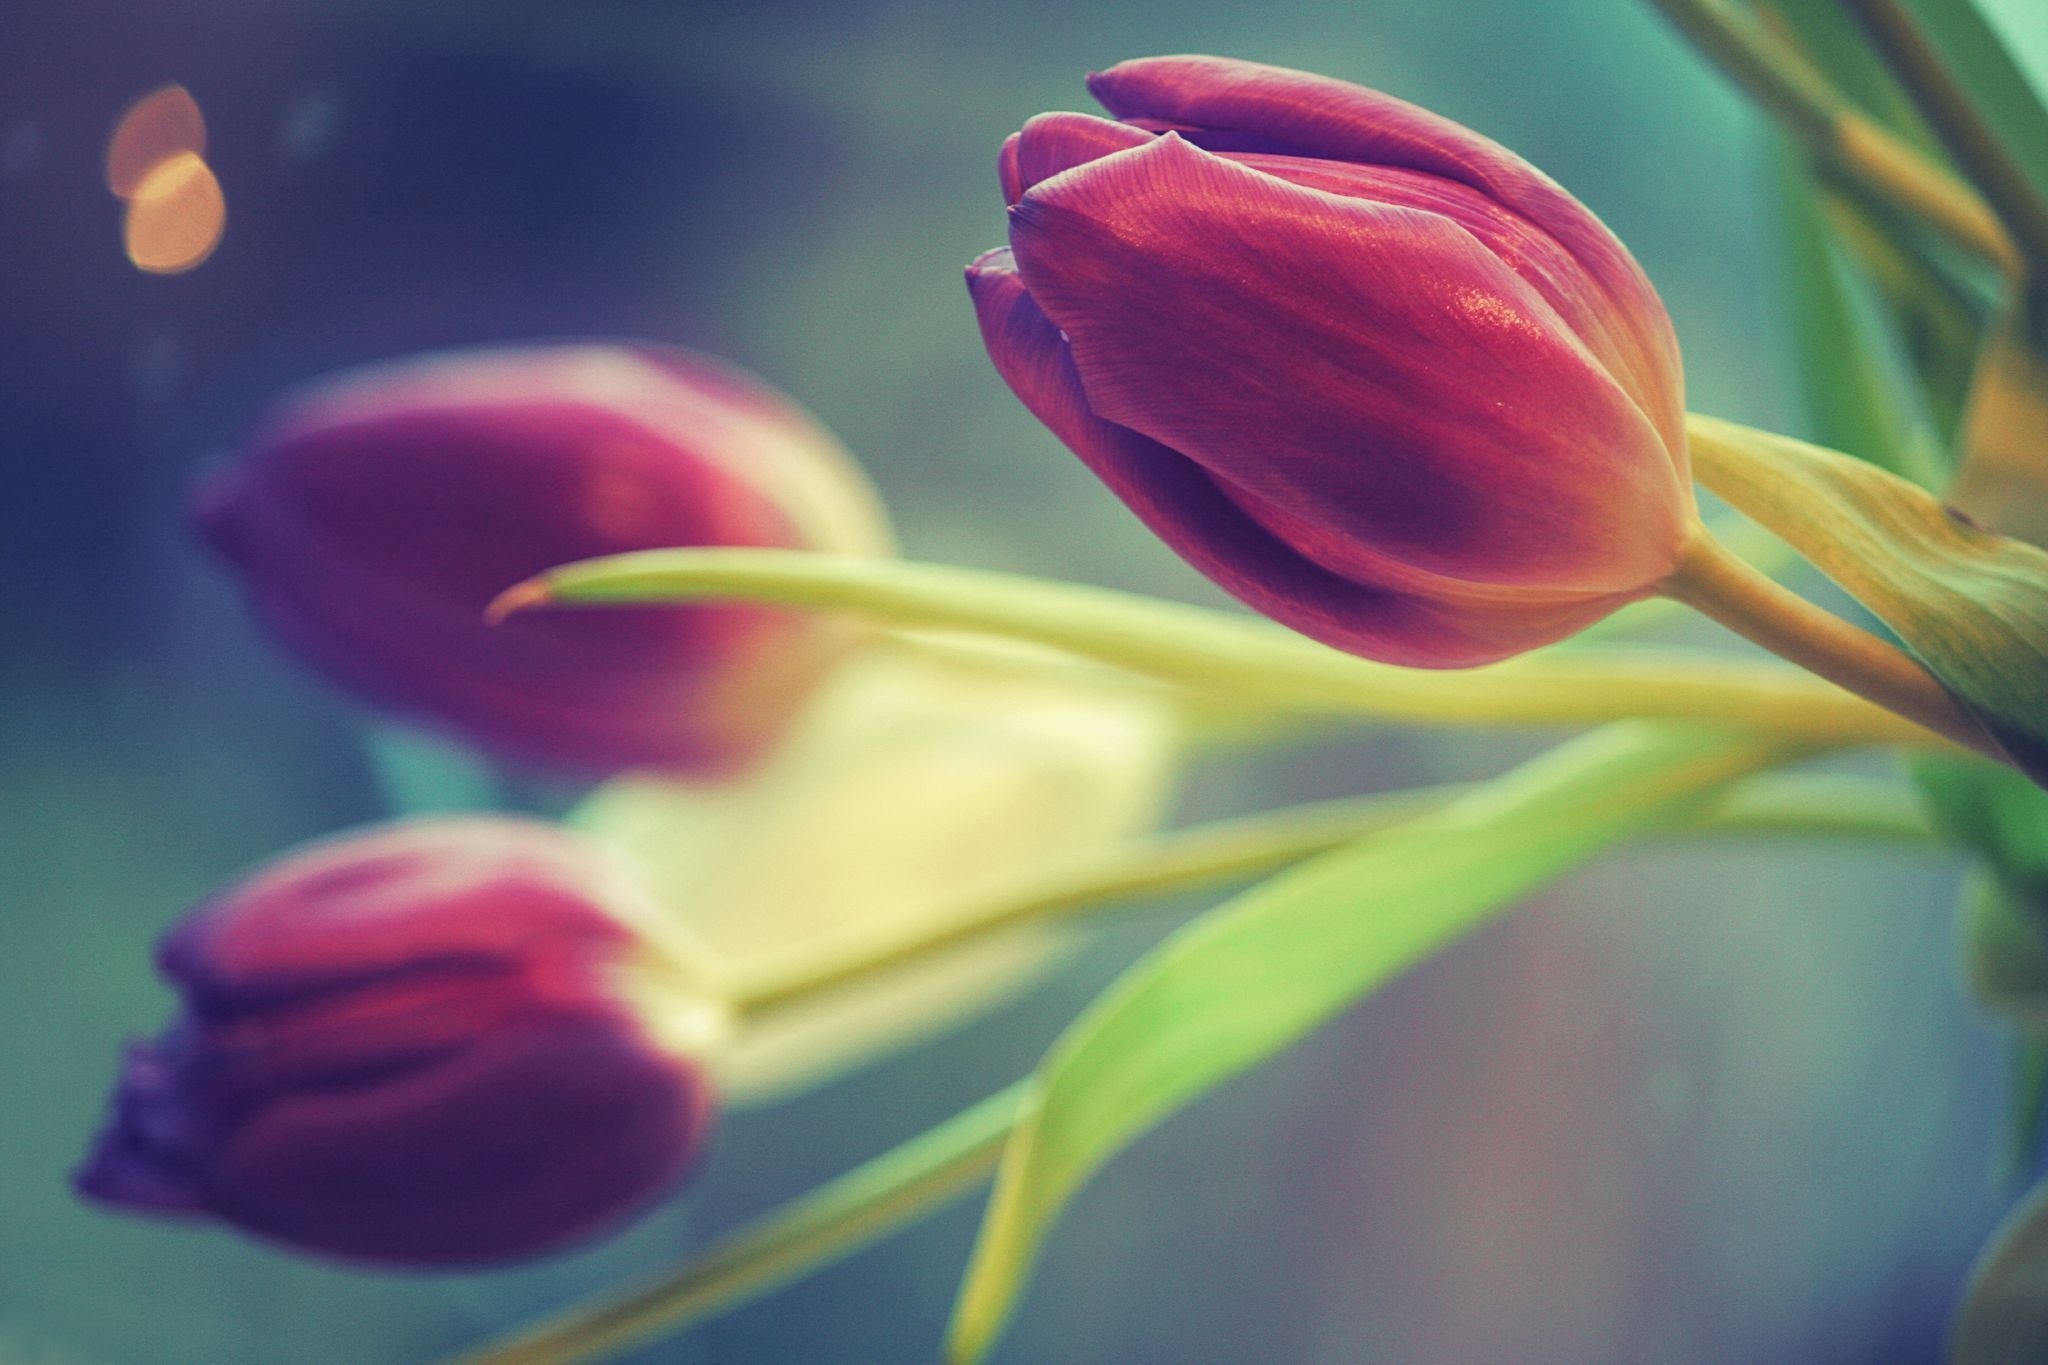 Обои с тюльпанами на телефон. Цветы тюльпаны. Тюльпан фиолетовый. Красивые тюльпаны. Тюльпаны обои.